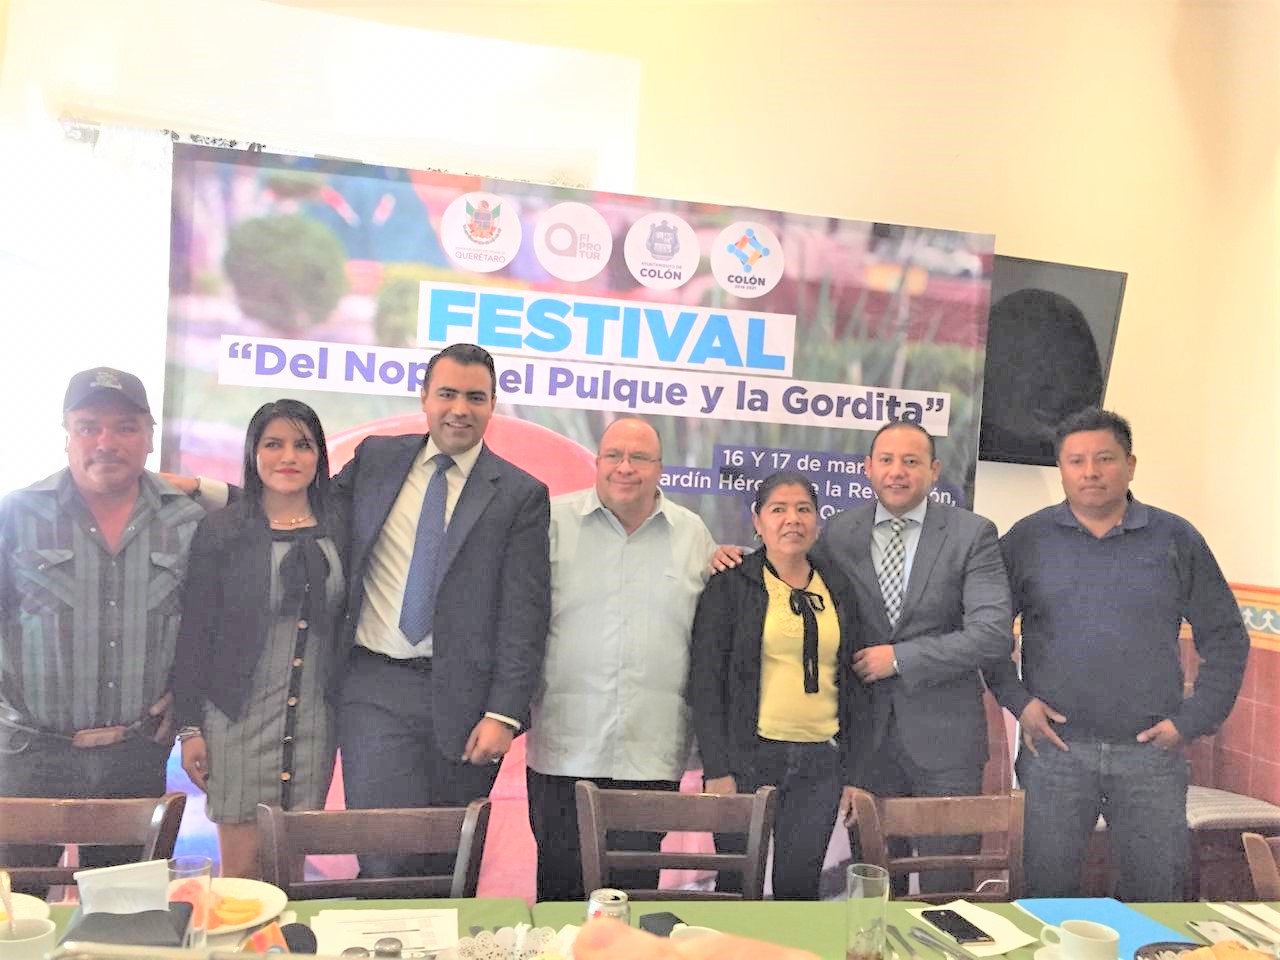 Presentan el "Festival del Nopal, el Pulque y la Gordita" Colón 2019.